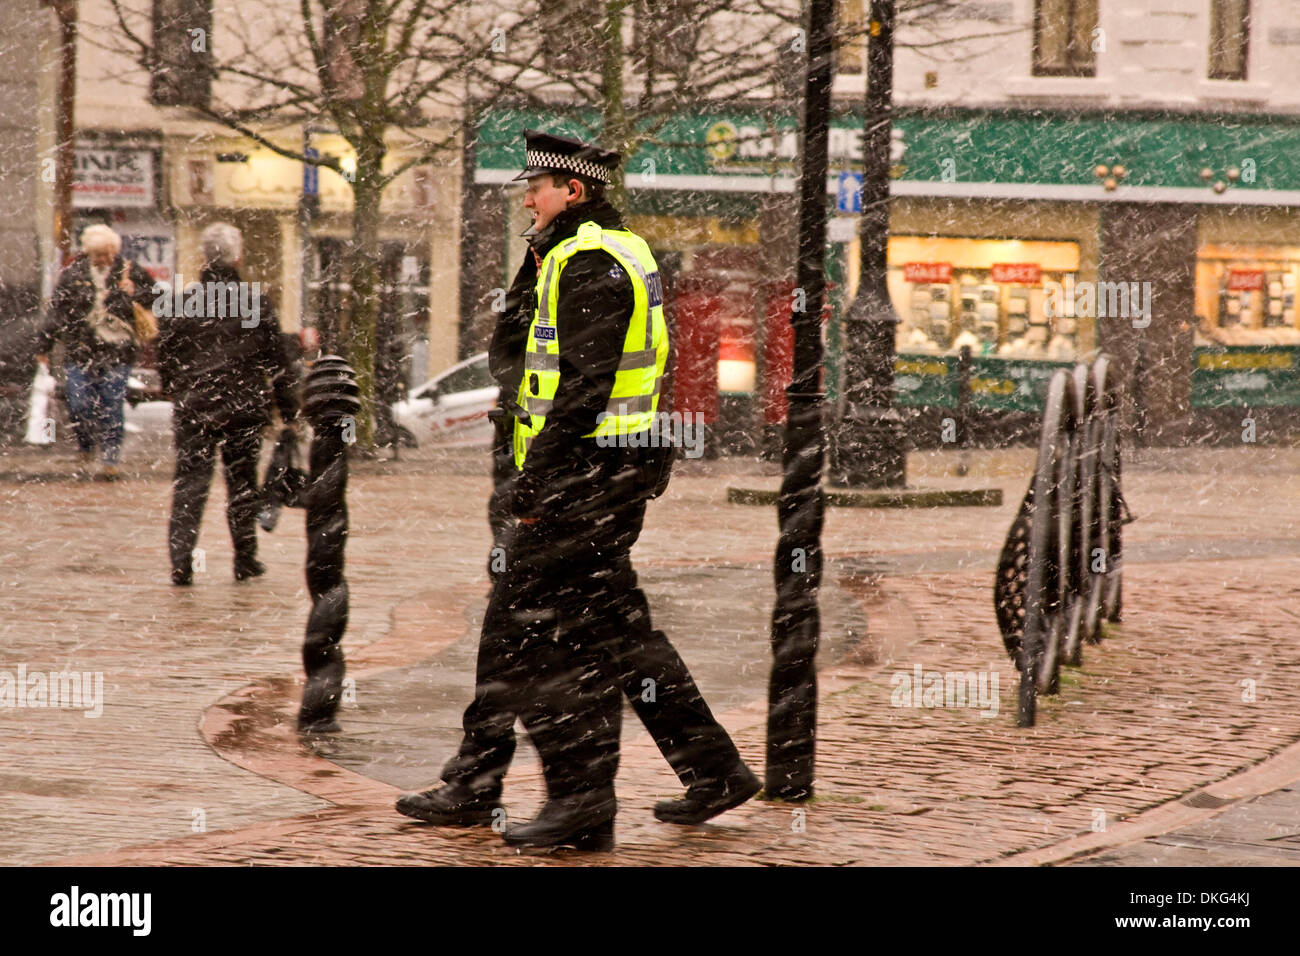 Dundee, Écosse, Royaume-Uni. 5 Décembre, 2013.Le met office a émis une alerte jaune de forts vents et tempêtes de neige pour le 5 décembre, 02:00 - 16:00 avec des rafales de 60 km/h généralisé atteignant 80km/h dans certaines zones. Deux policiers Tayside bravant les rigueurs de l'hiver aujourd'hui dans le centre-ville de Dundee : Crédit Photographics / Alamy Live News Banque D'Images